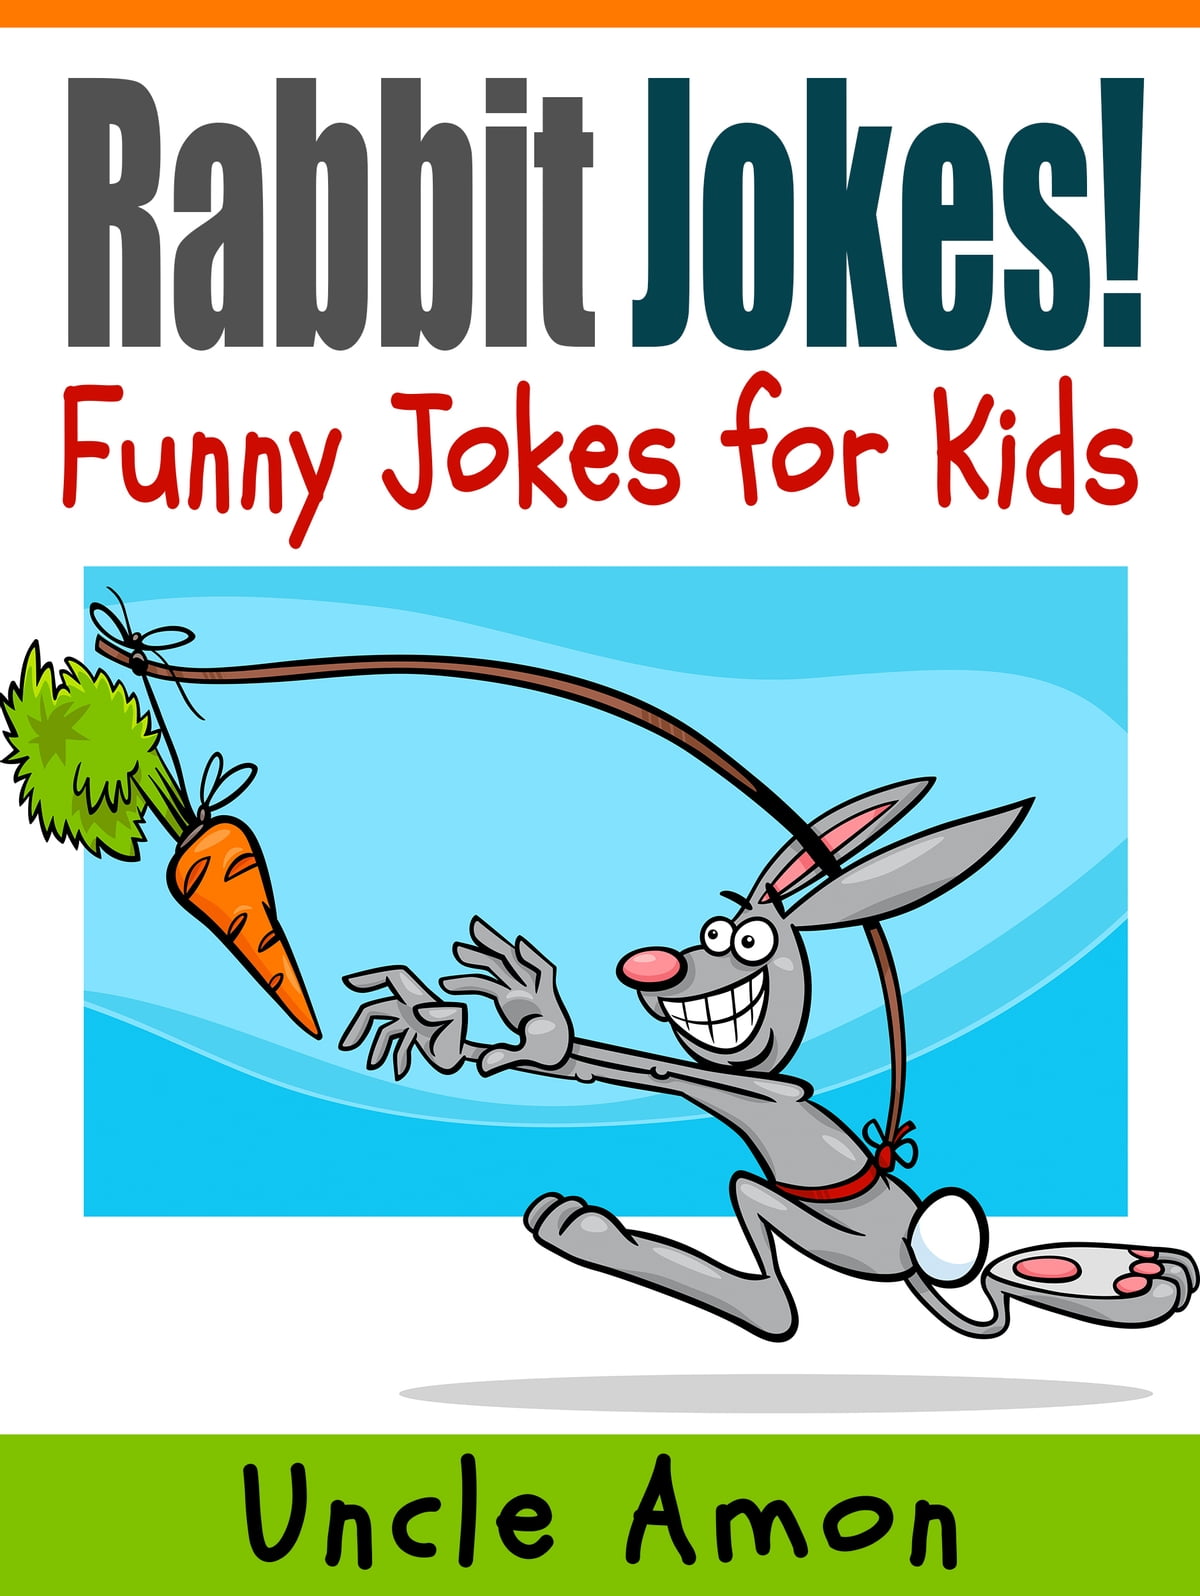 Witze für Kinder: große Liste mit Hasen- und Kaninchenwitzen